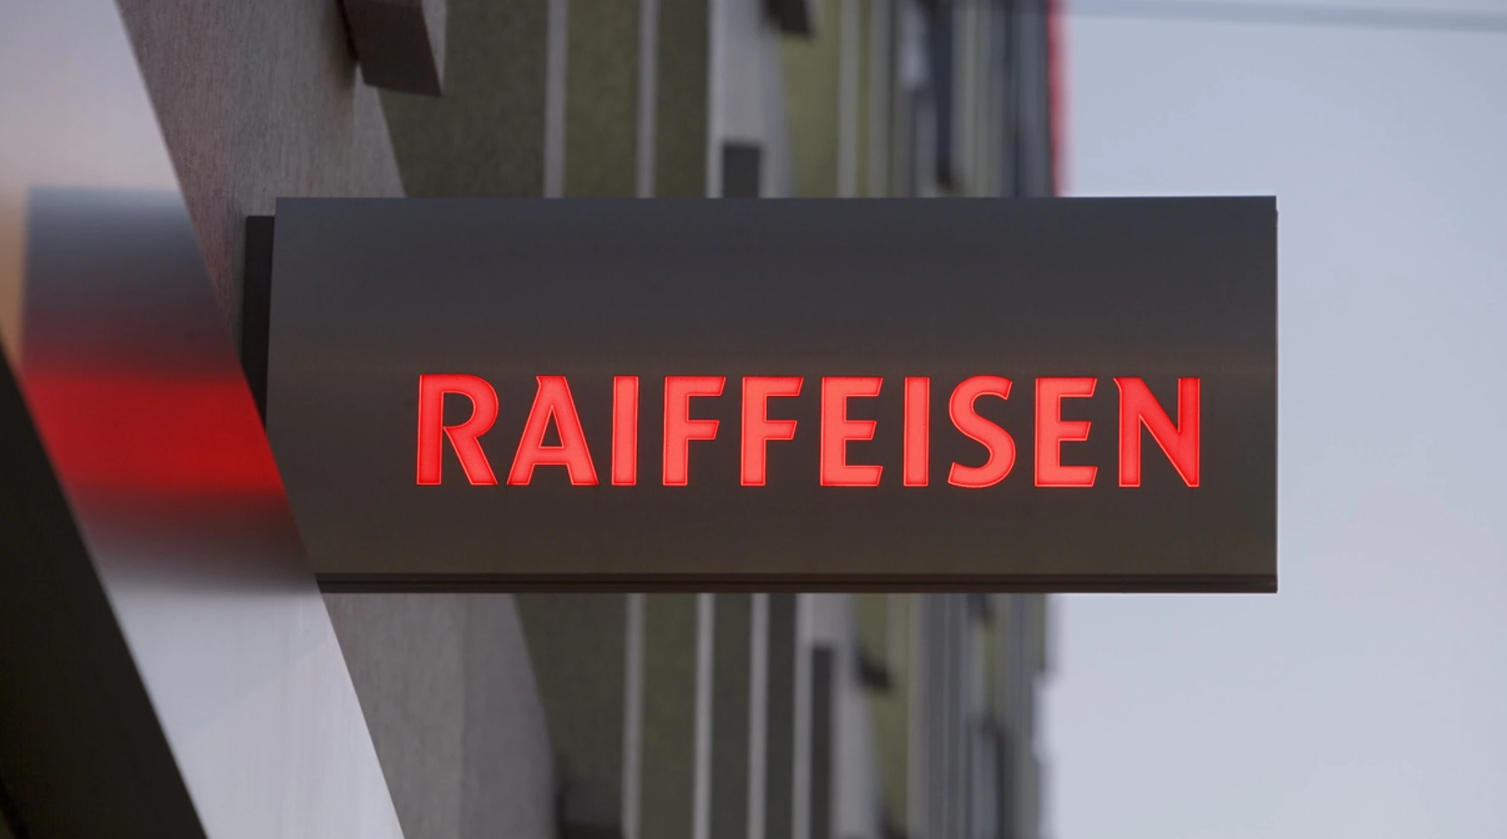 Raiffeisen закрыл все корреспондентские счета российских банков, кроме дочернего